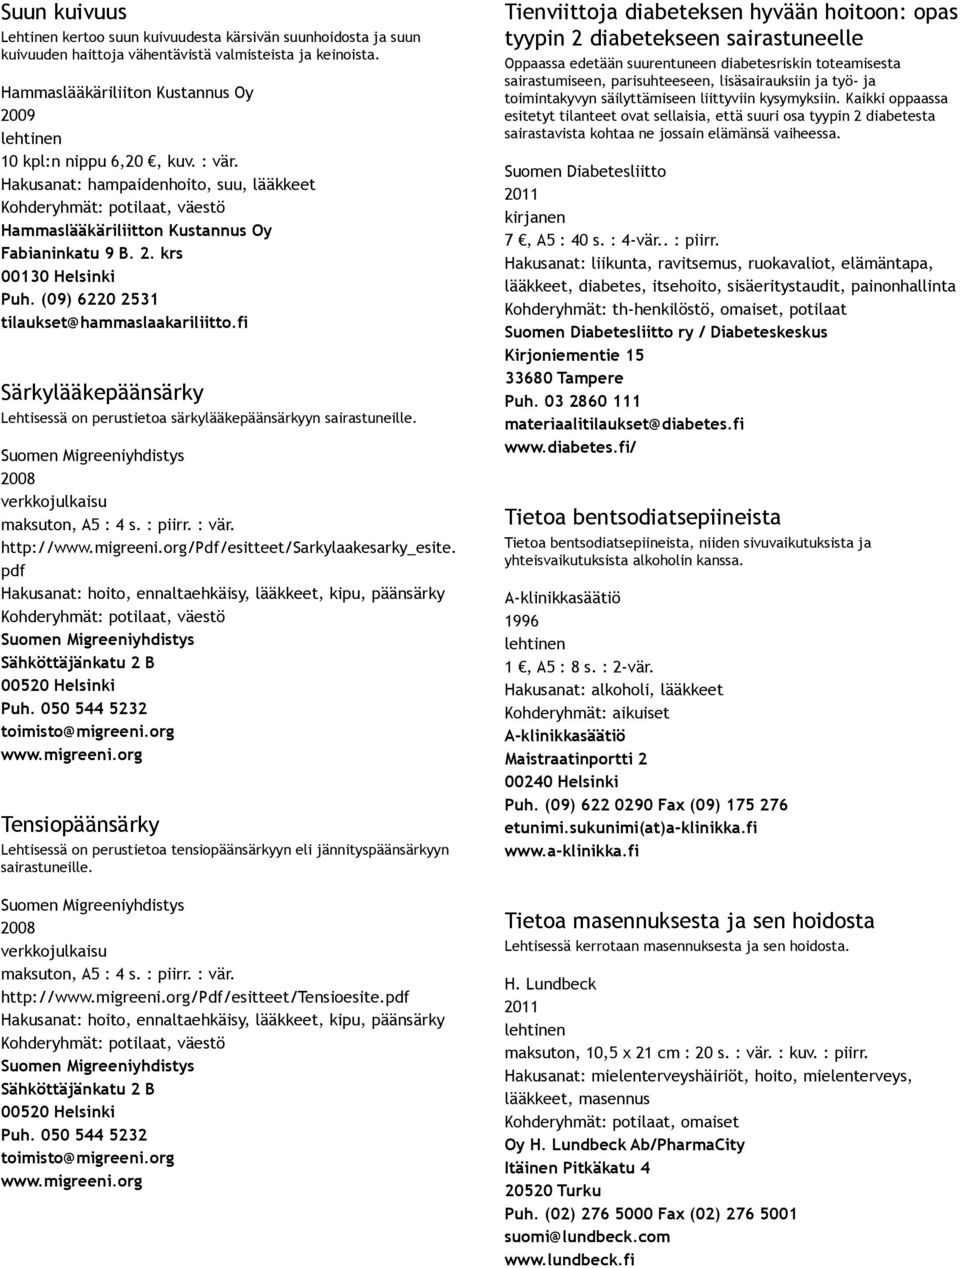 fi Särkylääkepäänsärky Lehtisessä on perustietoa särkylääkepäänsärkyyn sairastuneille. 2008 maksuton, A5 : 4 s. : piirr. : vär. http:///pdf/esitteet/sarkylaakesarky_esite.